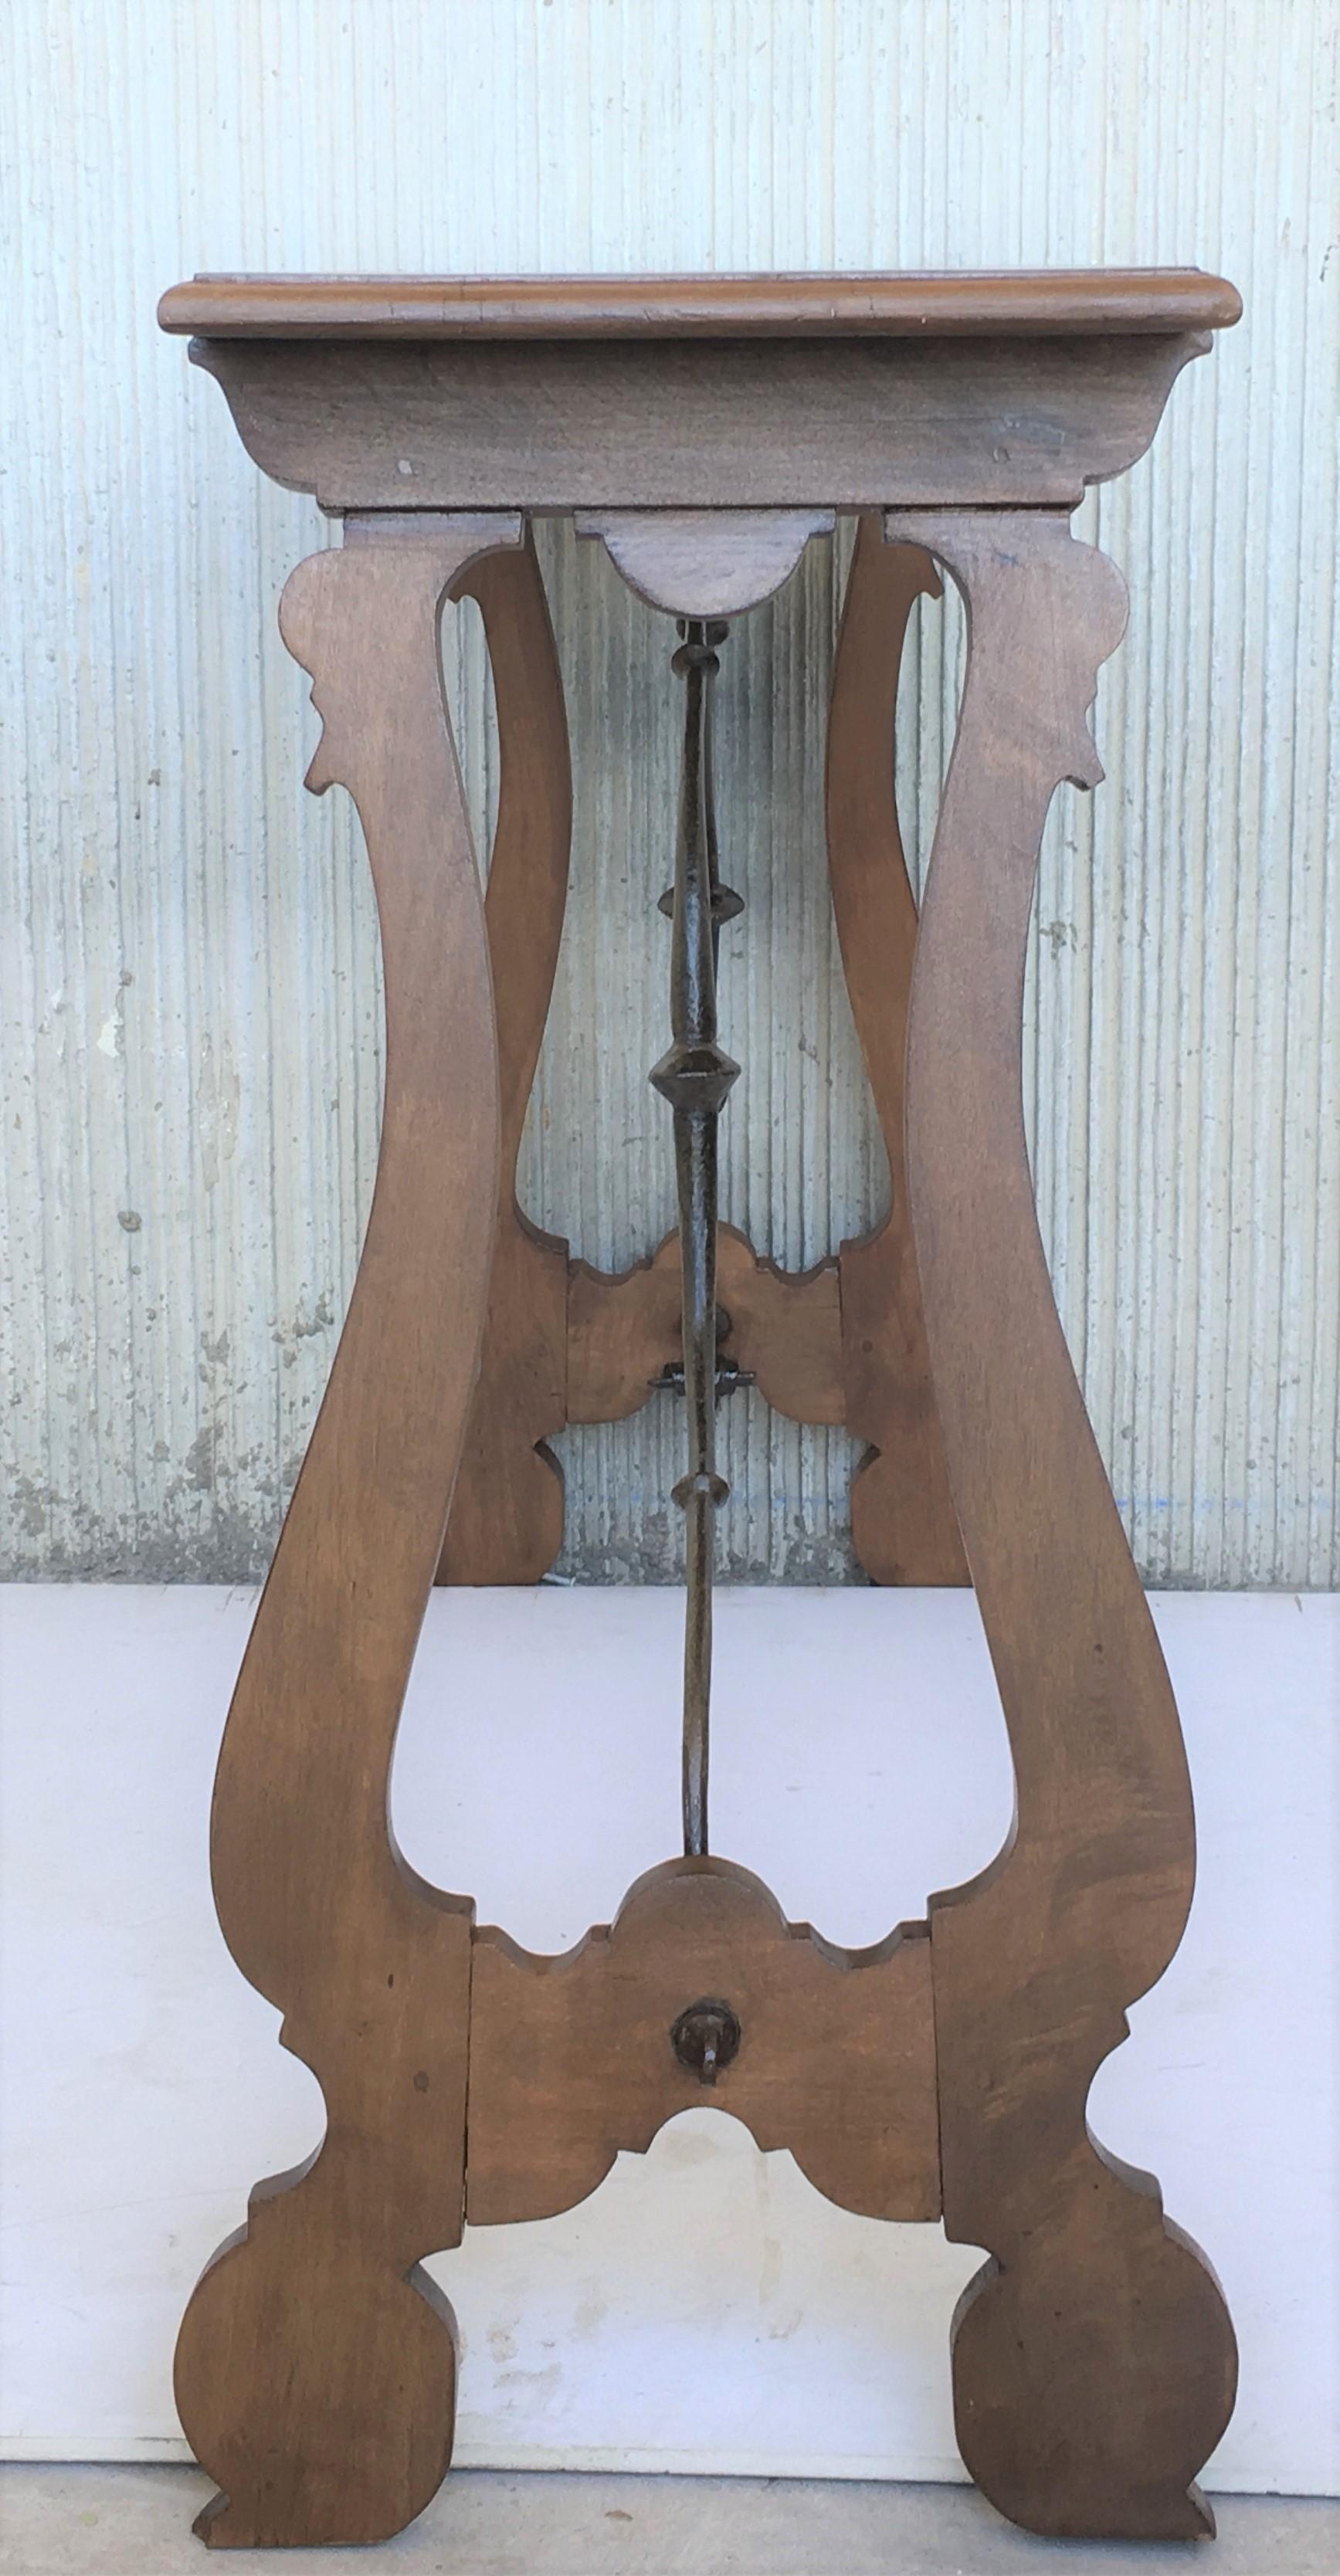 Spanischer Konsolentisch mit Eisenträger und gedrechselten Beinen, Beistelltisch, Barock 13